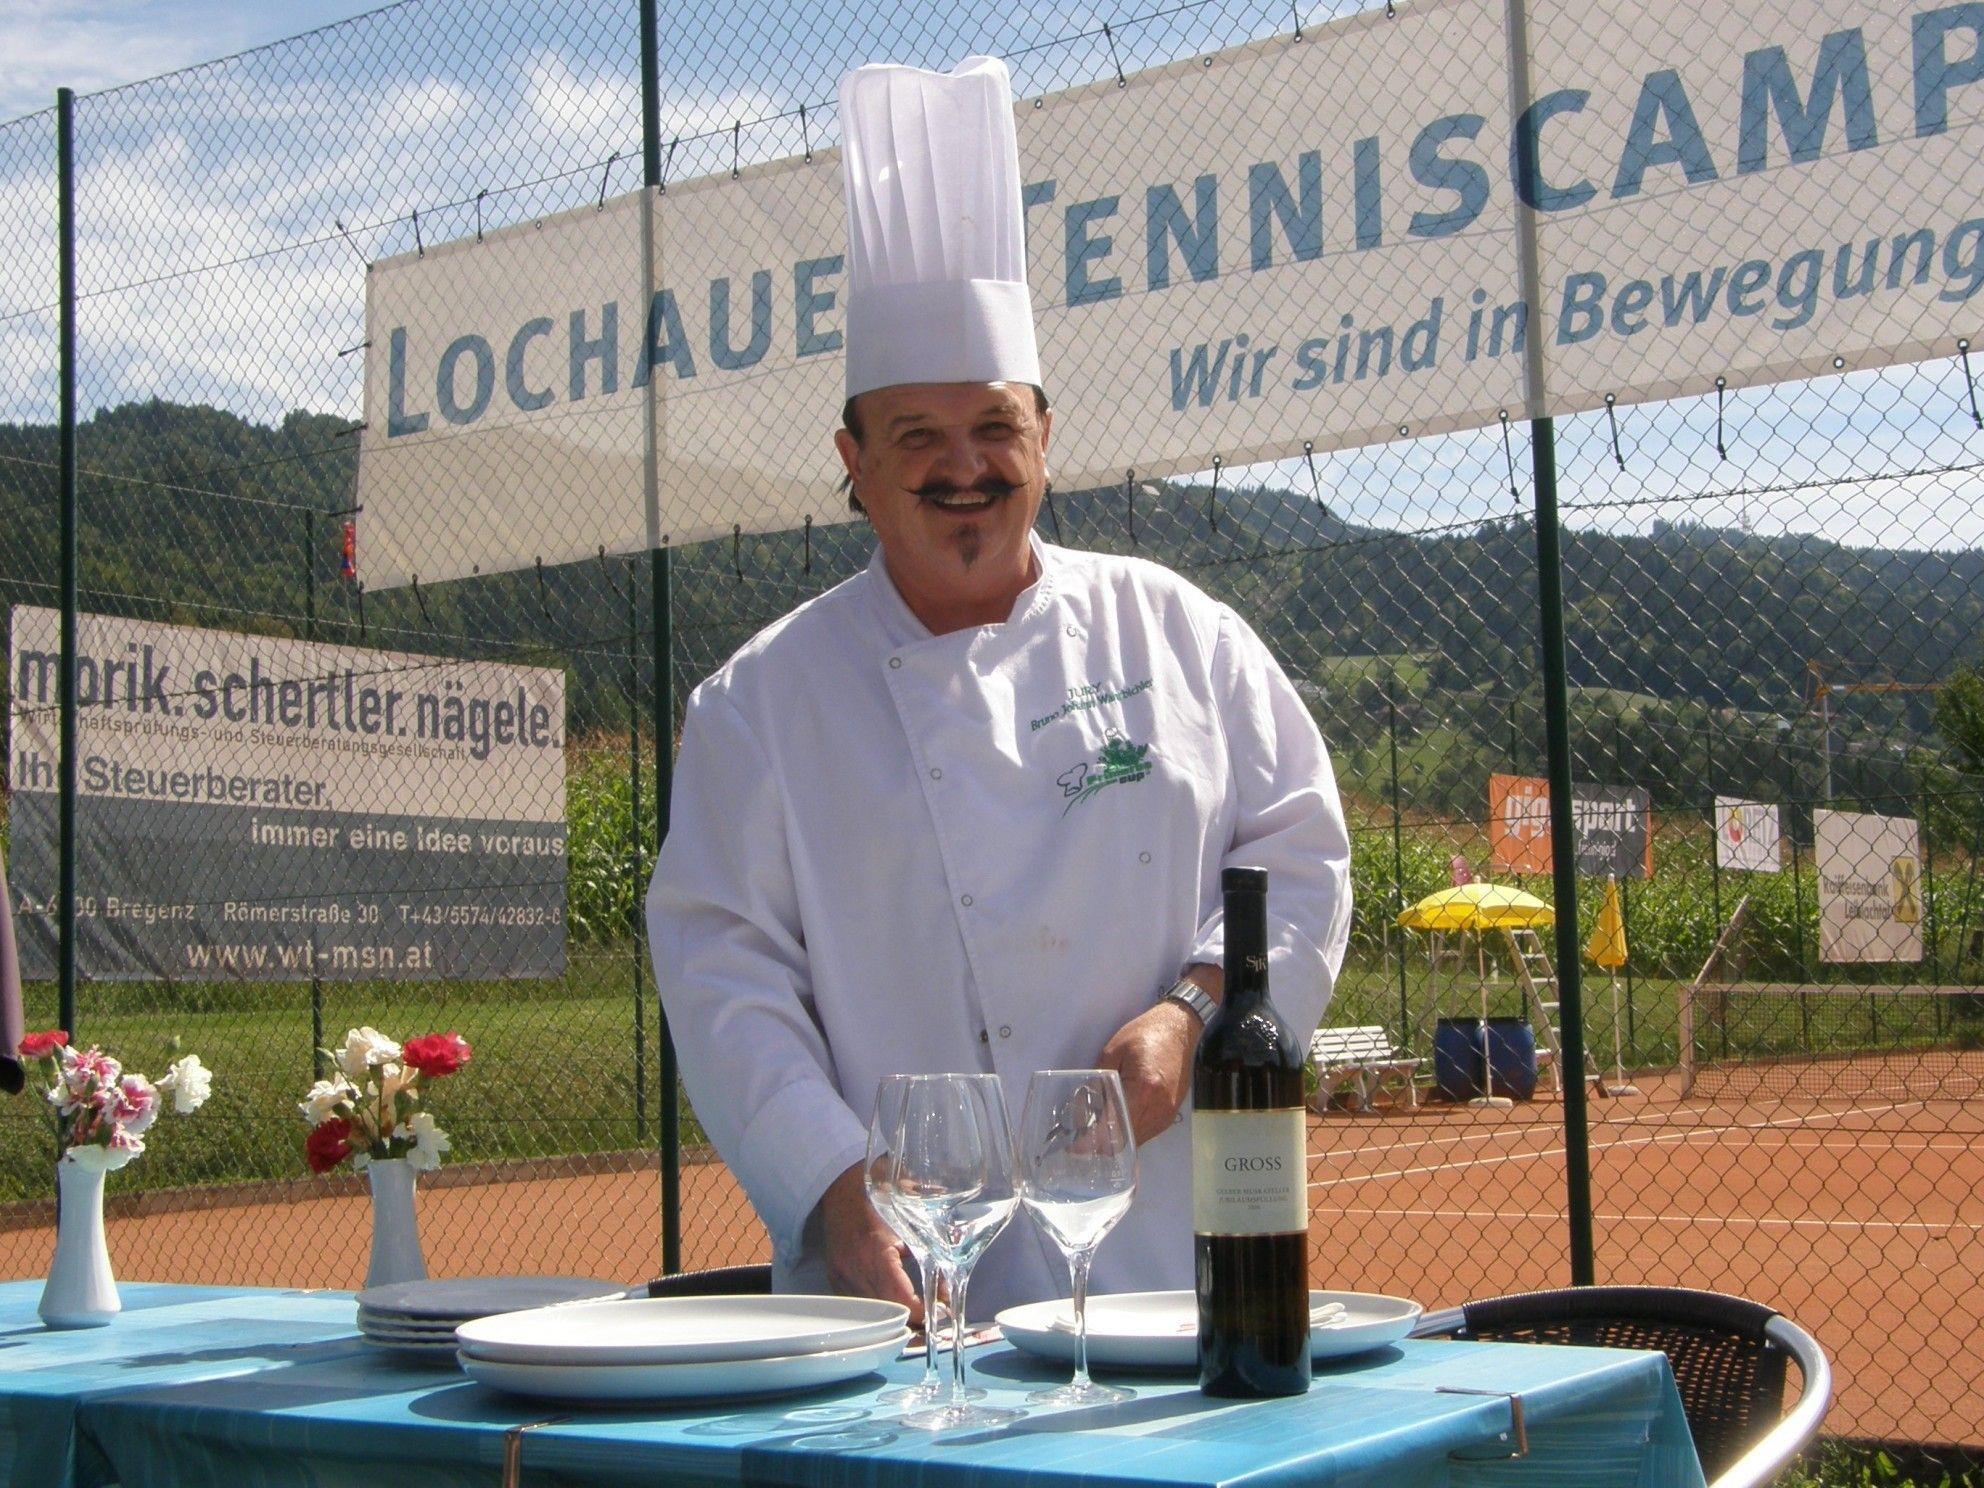 Bruno Wahrbichler verwöhnt die Lochauer Tennisspieler(innen) nach allen Regeln der Kochkunst,